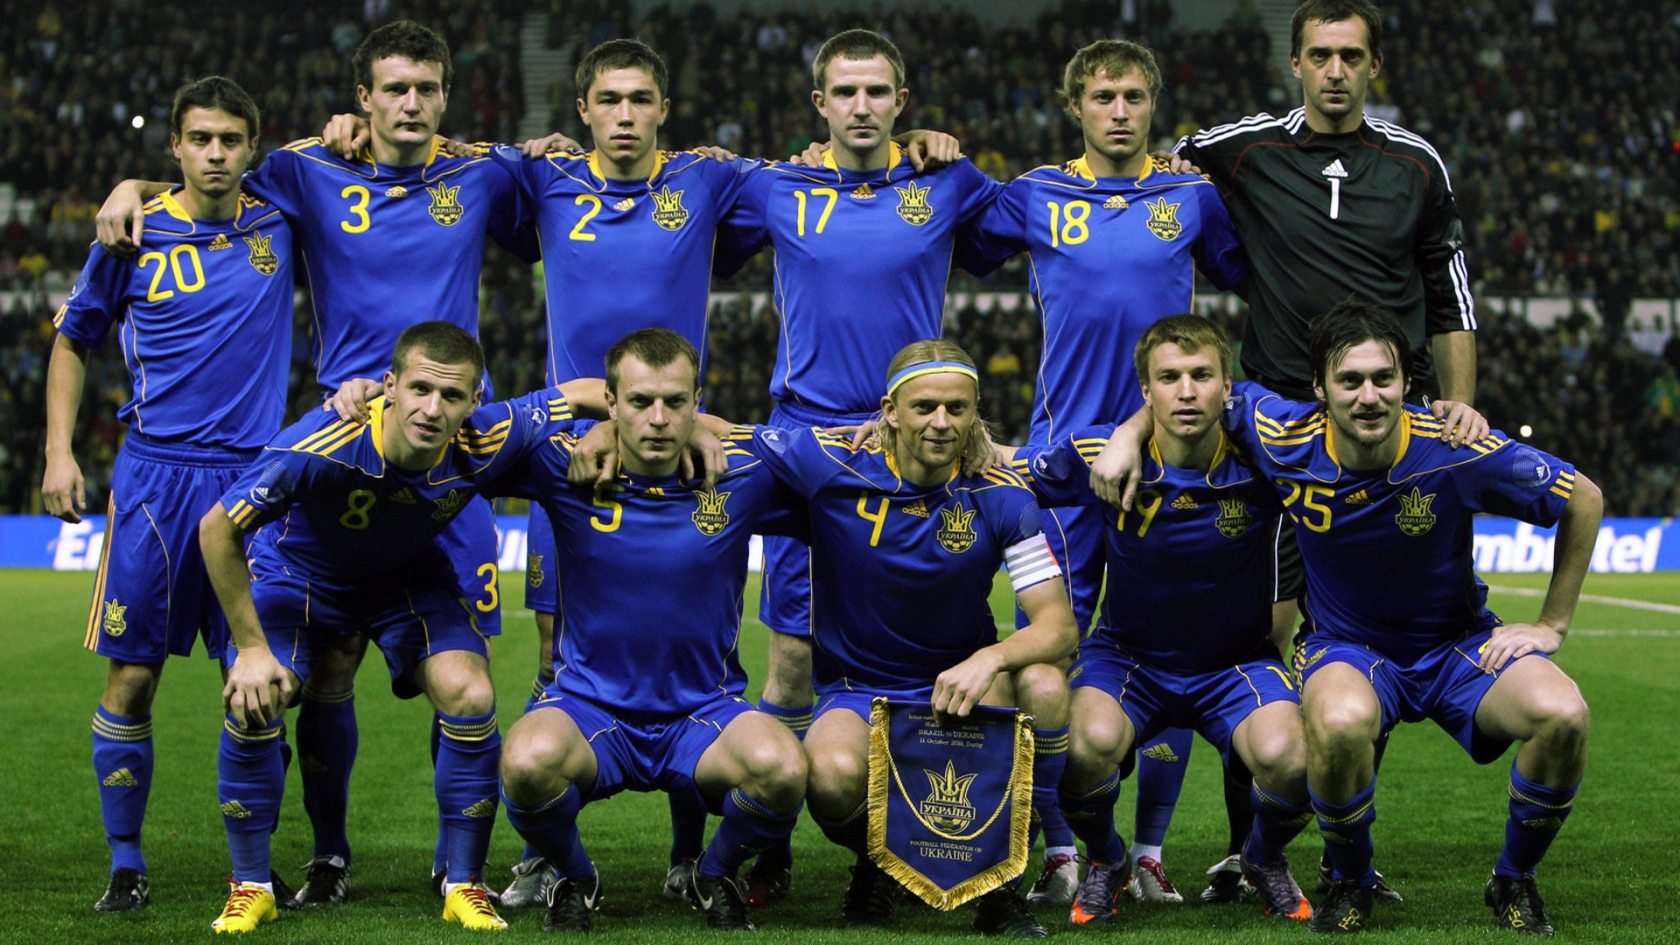 Ukraine National Team for 1680 x 945 HDTV resolution